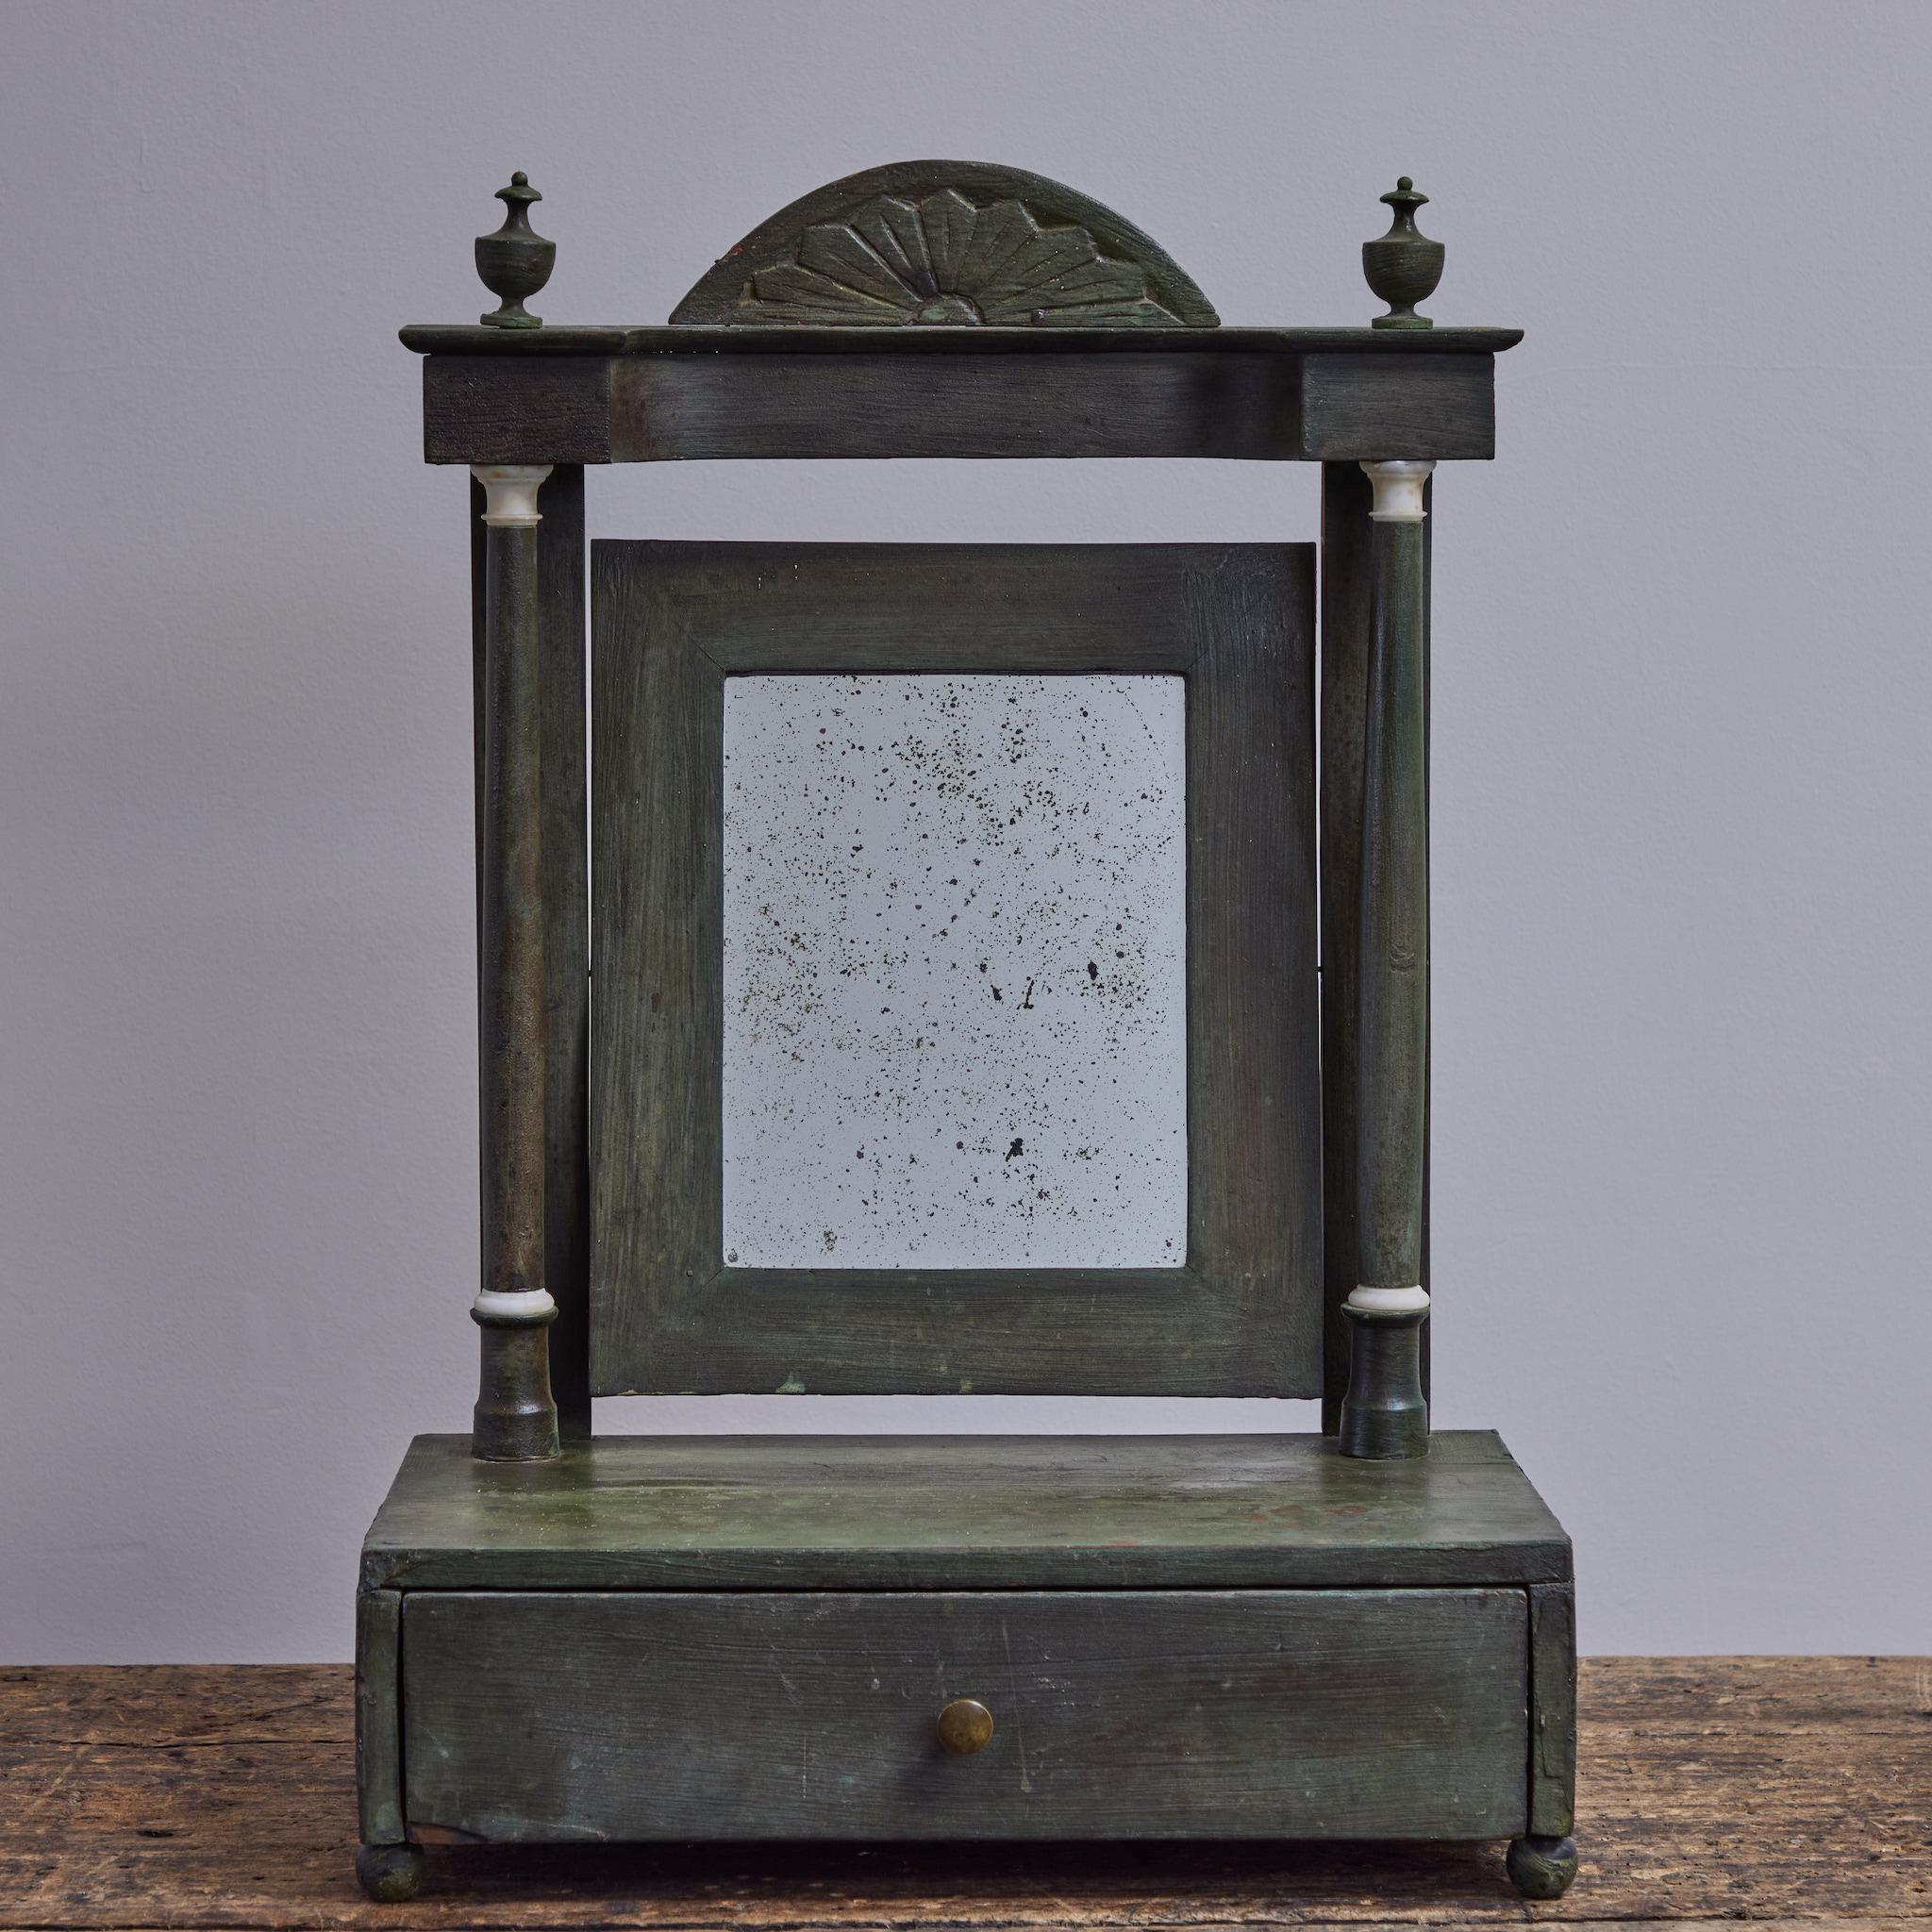 Miroir de commode peint en vert des années 1840 en Angleterre. Le miroir basculant est flanqué de deux colonnes ioniques et d'une frise flottante avec fronton en éventail sculpté et fleurons en forme d'urne. Une base rectangulaire repose sur des